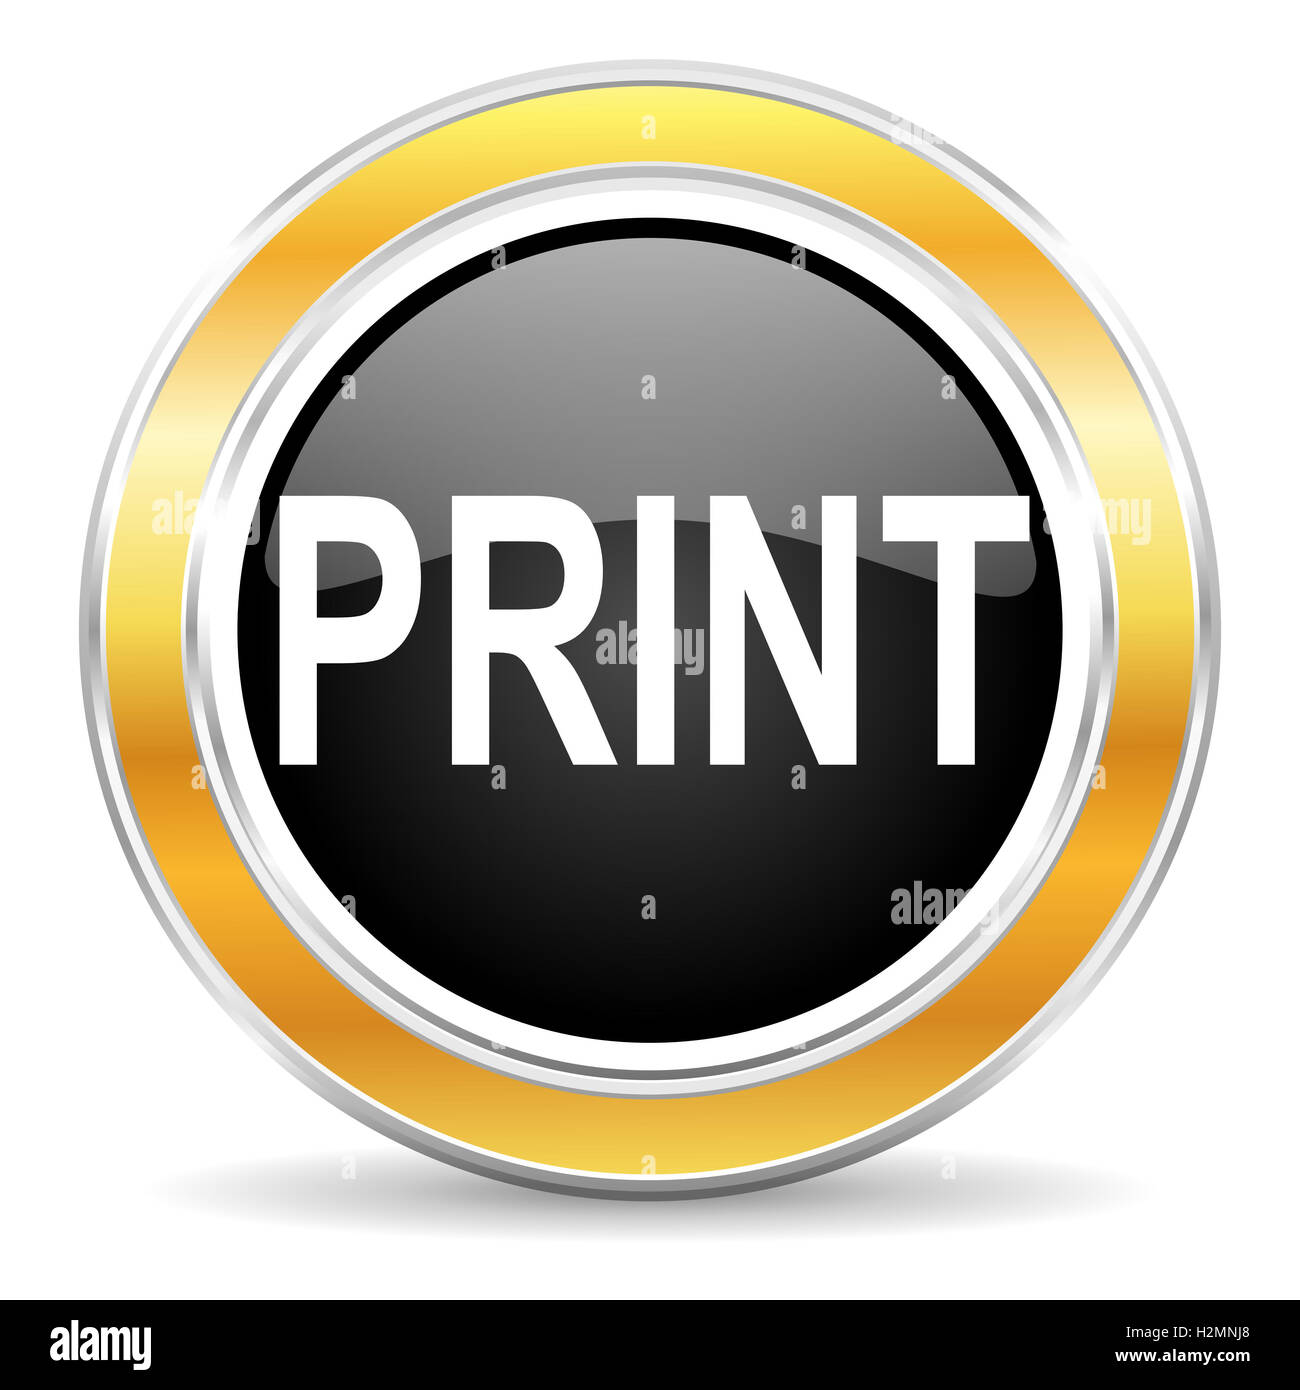 print icon Stock Photo